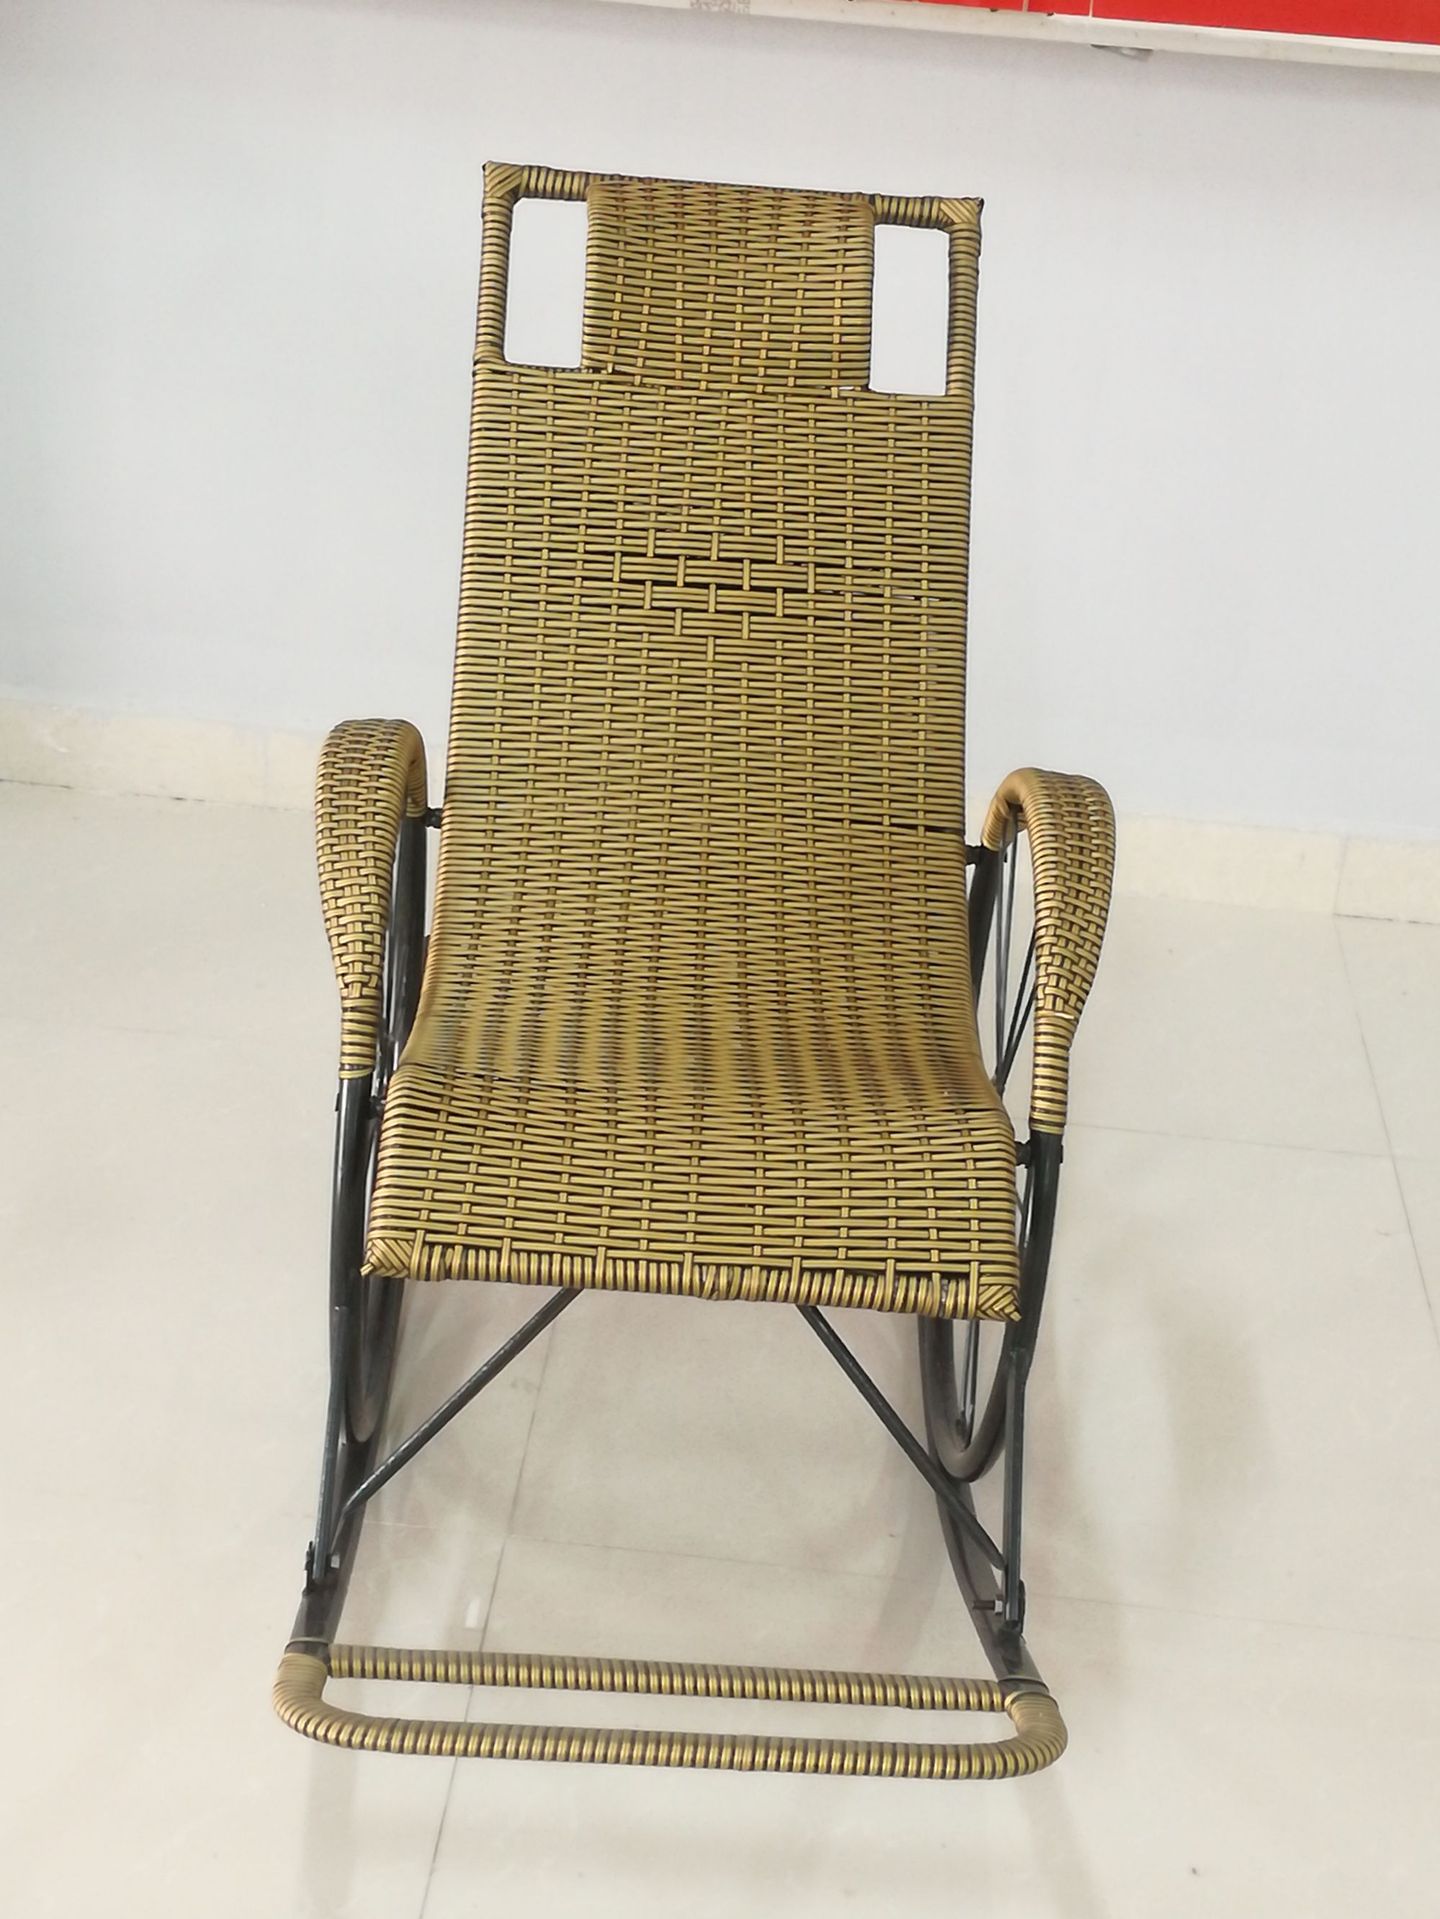 厂家直销双轮摇椅 逍遥椅  藤编躺椅 摇摇椅 质量可靠一件代发示例图9